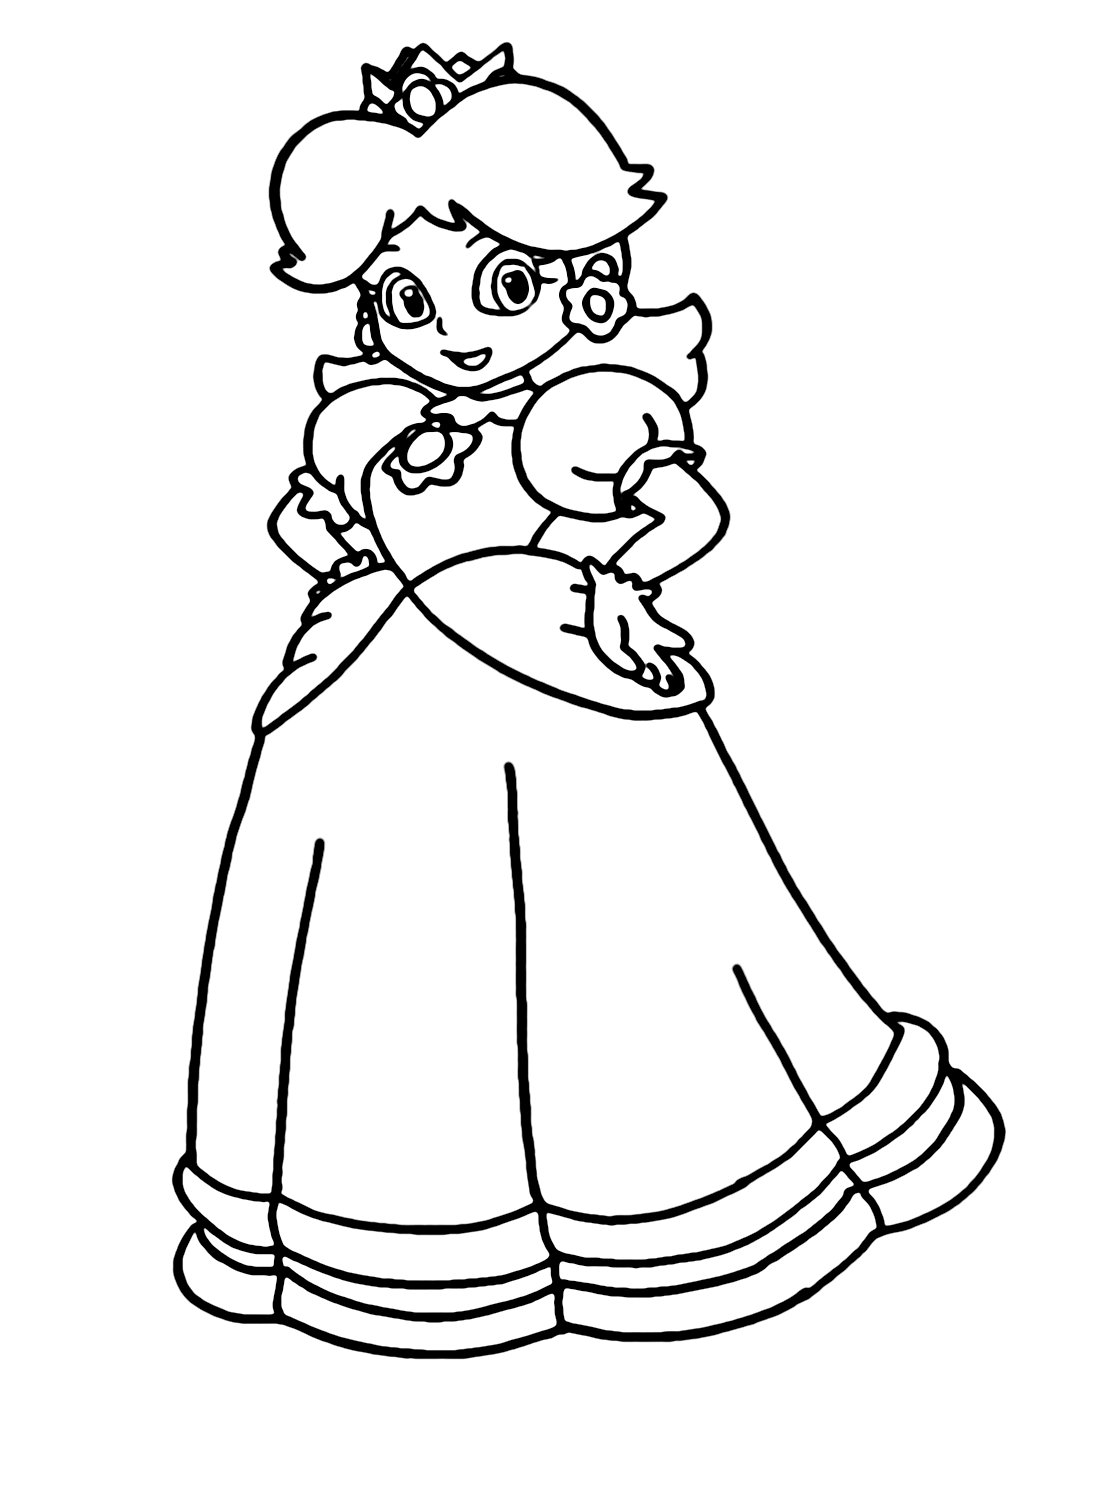 Princess Daisy Mario Bros Coloring Page